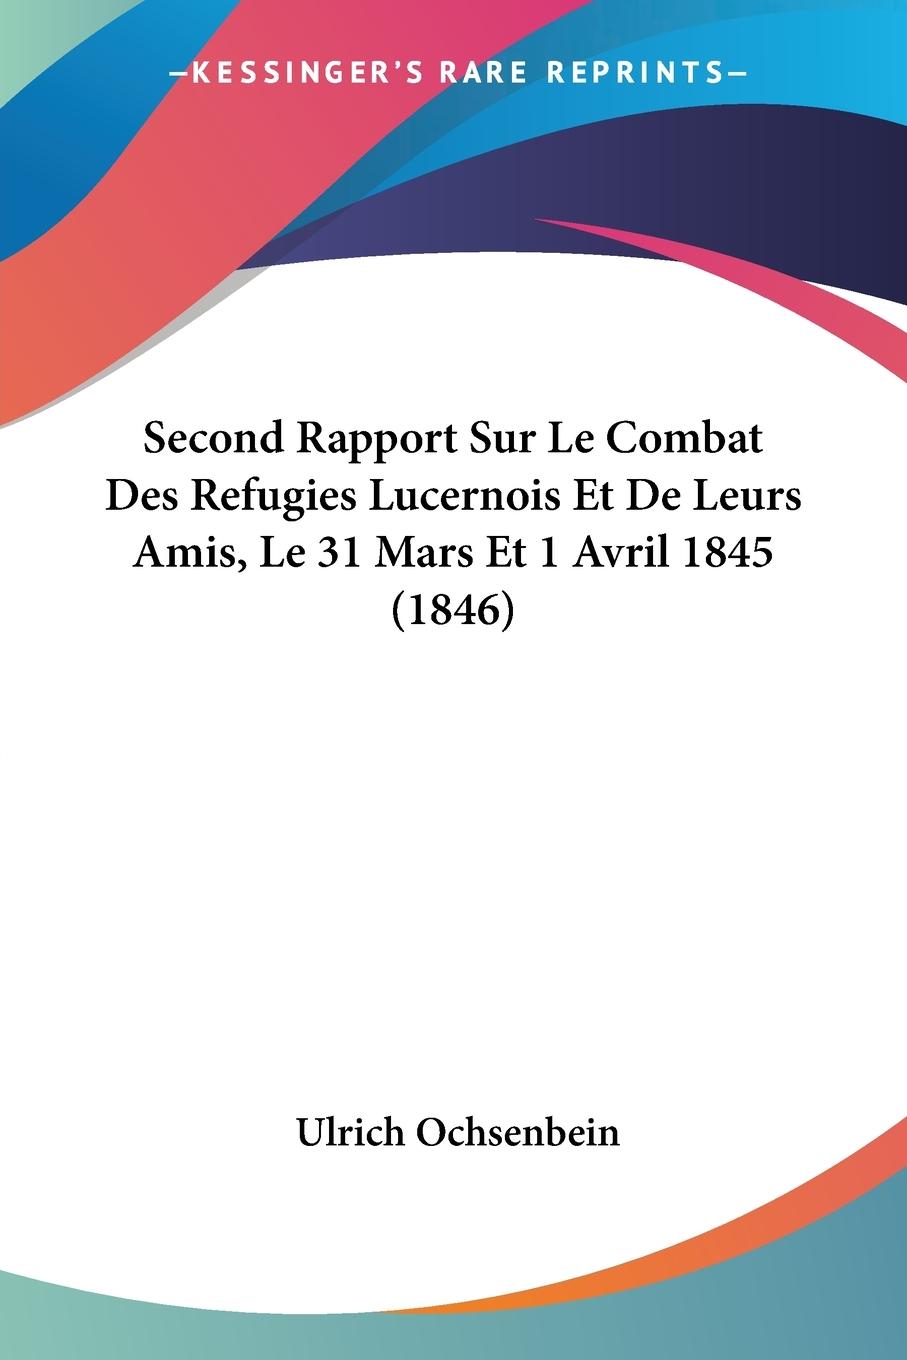 Second Rapport Sur Le Combat Des Refugies Lucernois Et De Leurs Amis, Le 31 Mars Et 1 Avril 1845 (1846) - Ochsenbein, Ulrich